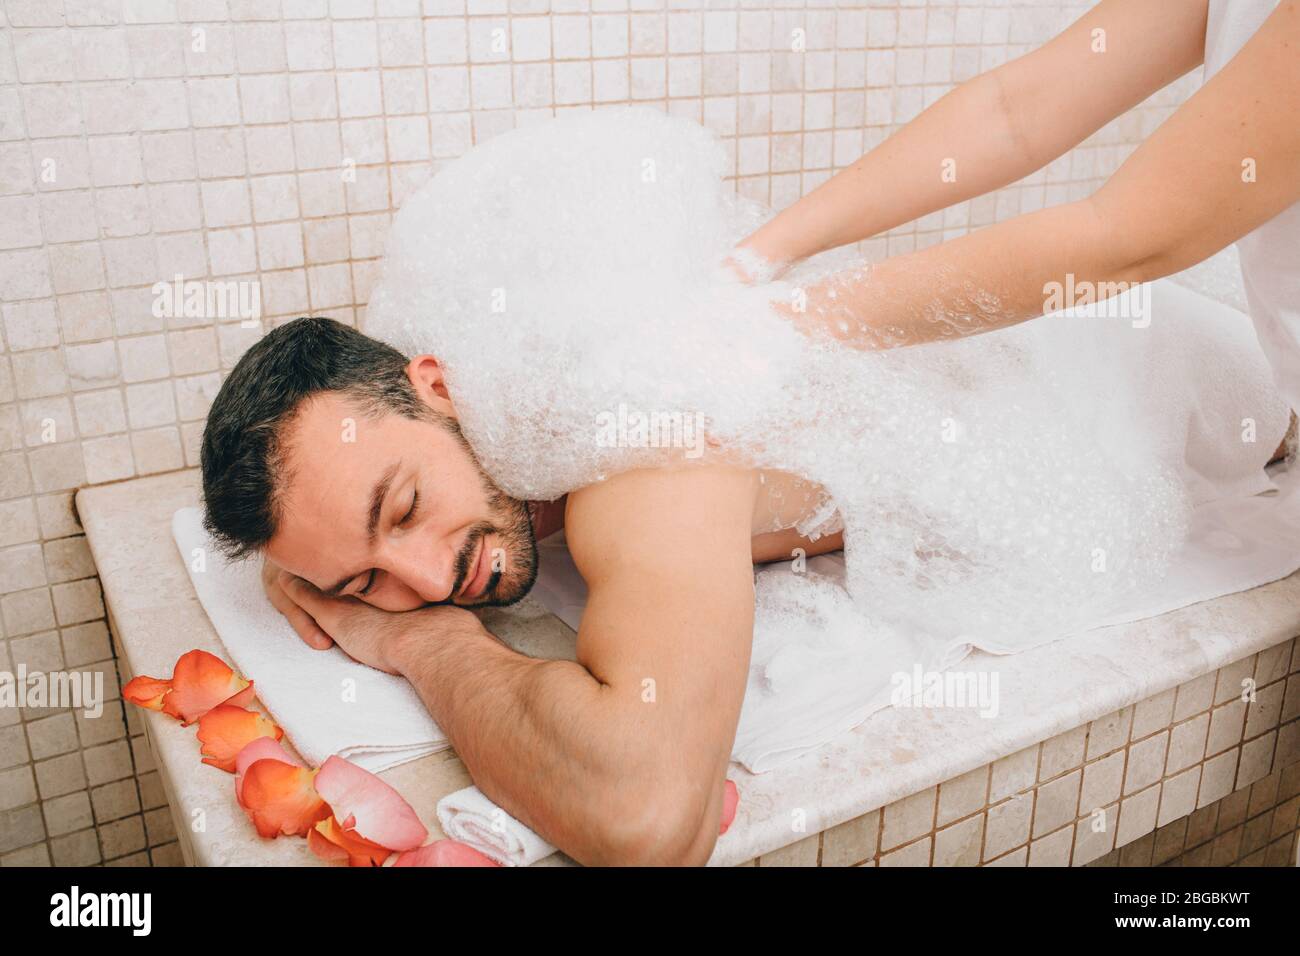 Luxury relaxation oriental man in a Turkish bath. Hammam worker washes men's skin in hammam Stock Photo